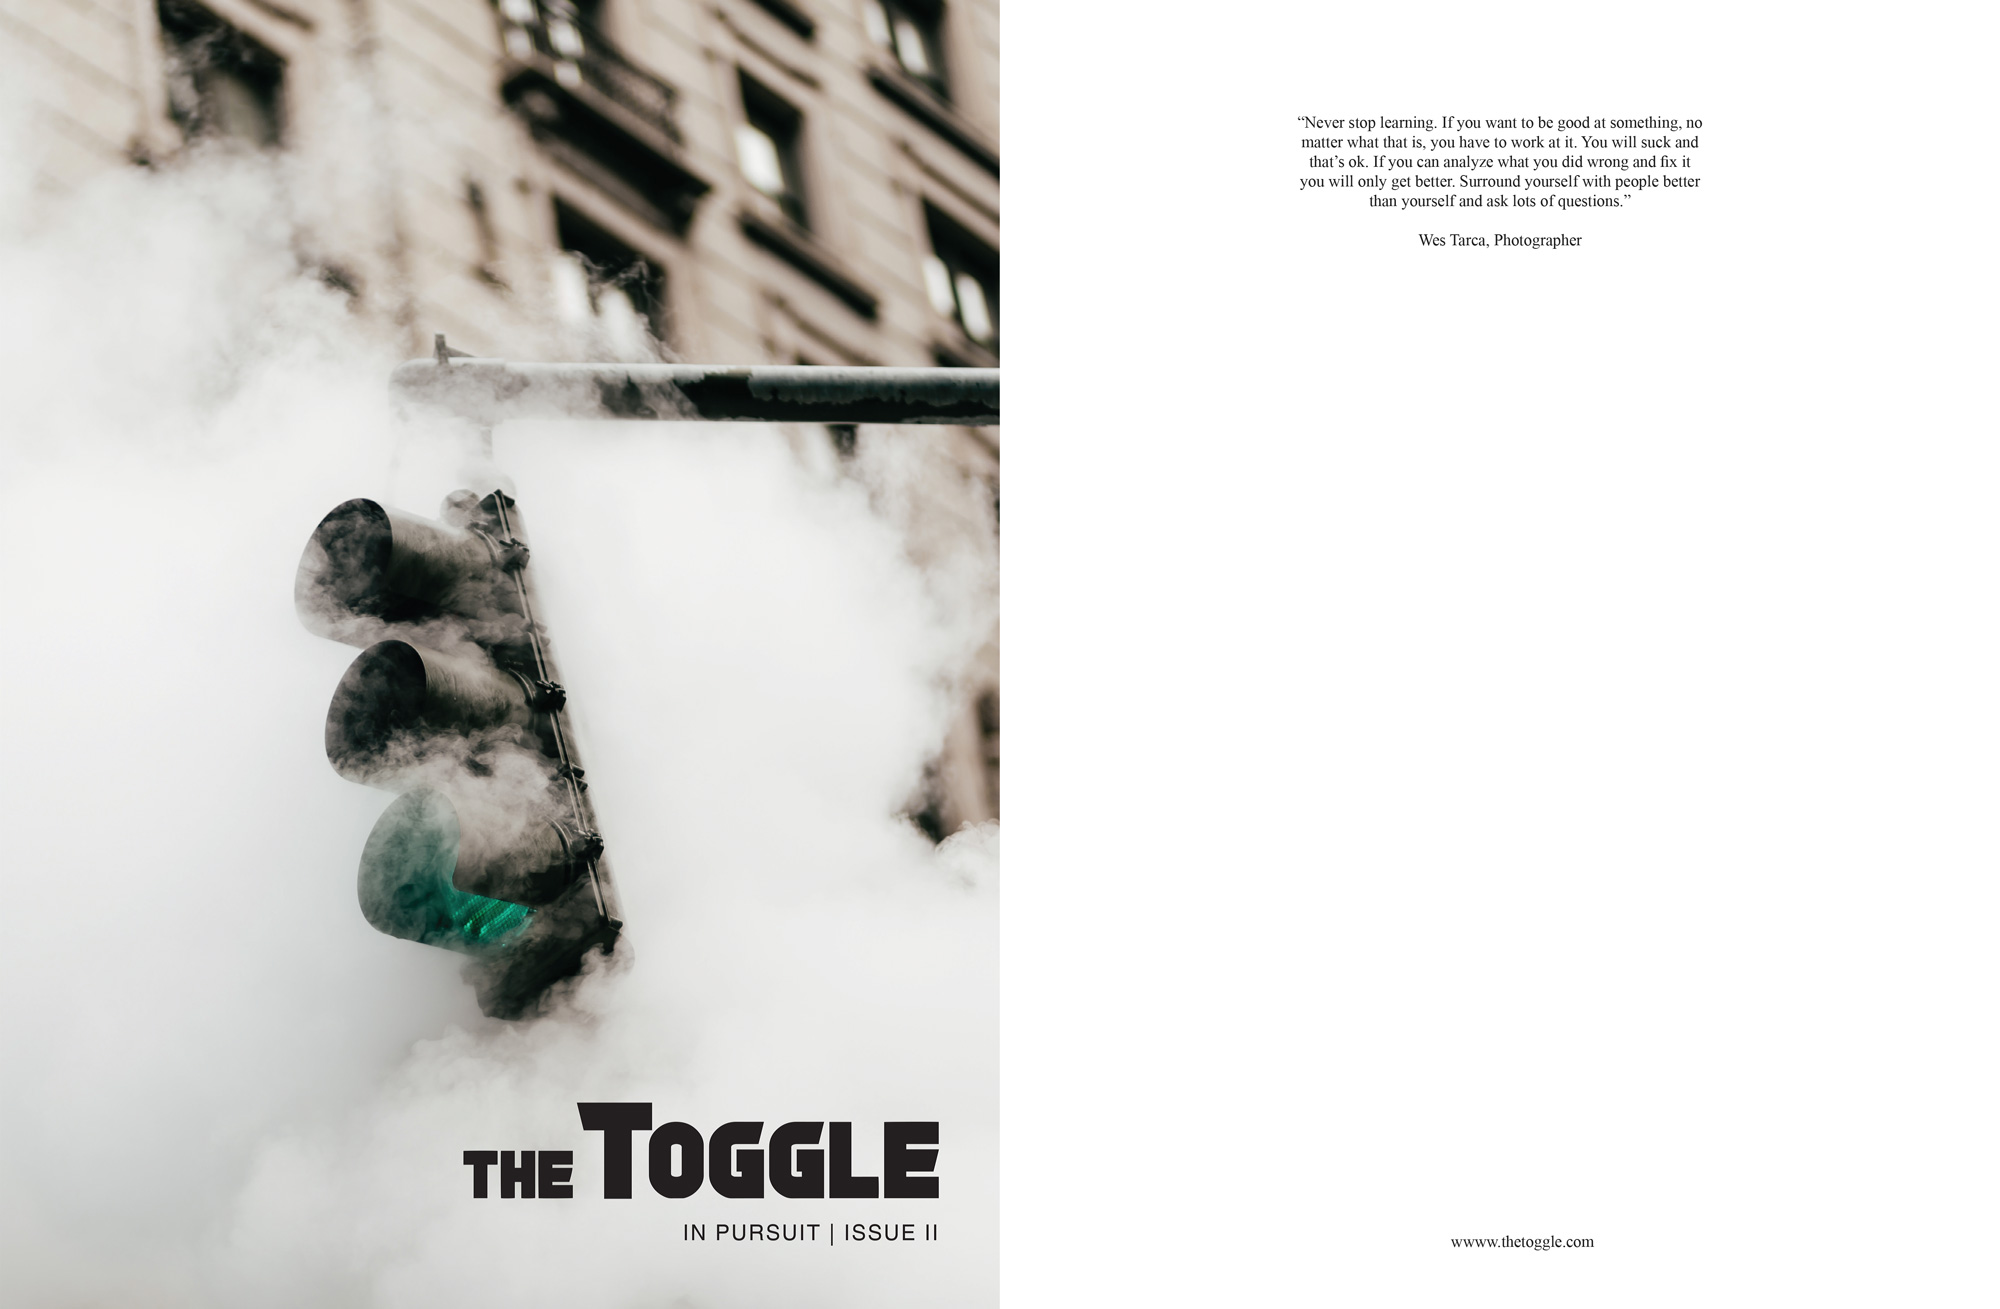  The Toggle Magazine, Issue II  the  t  oggle.com  